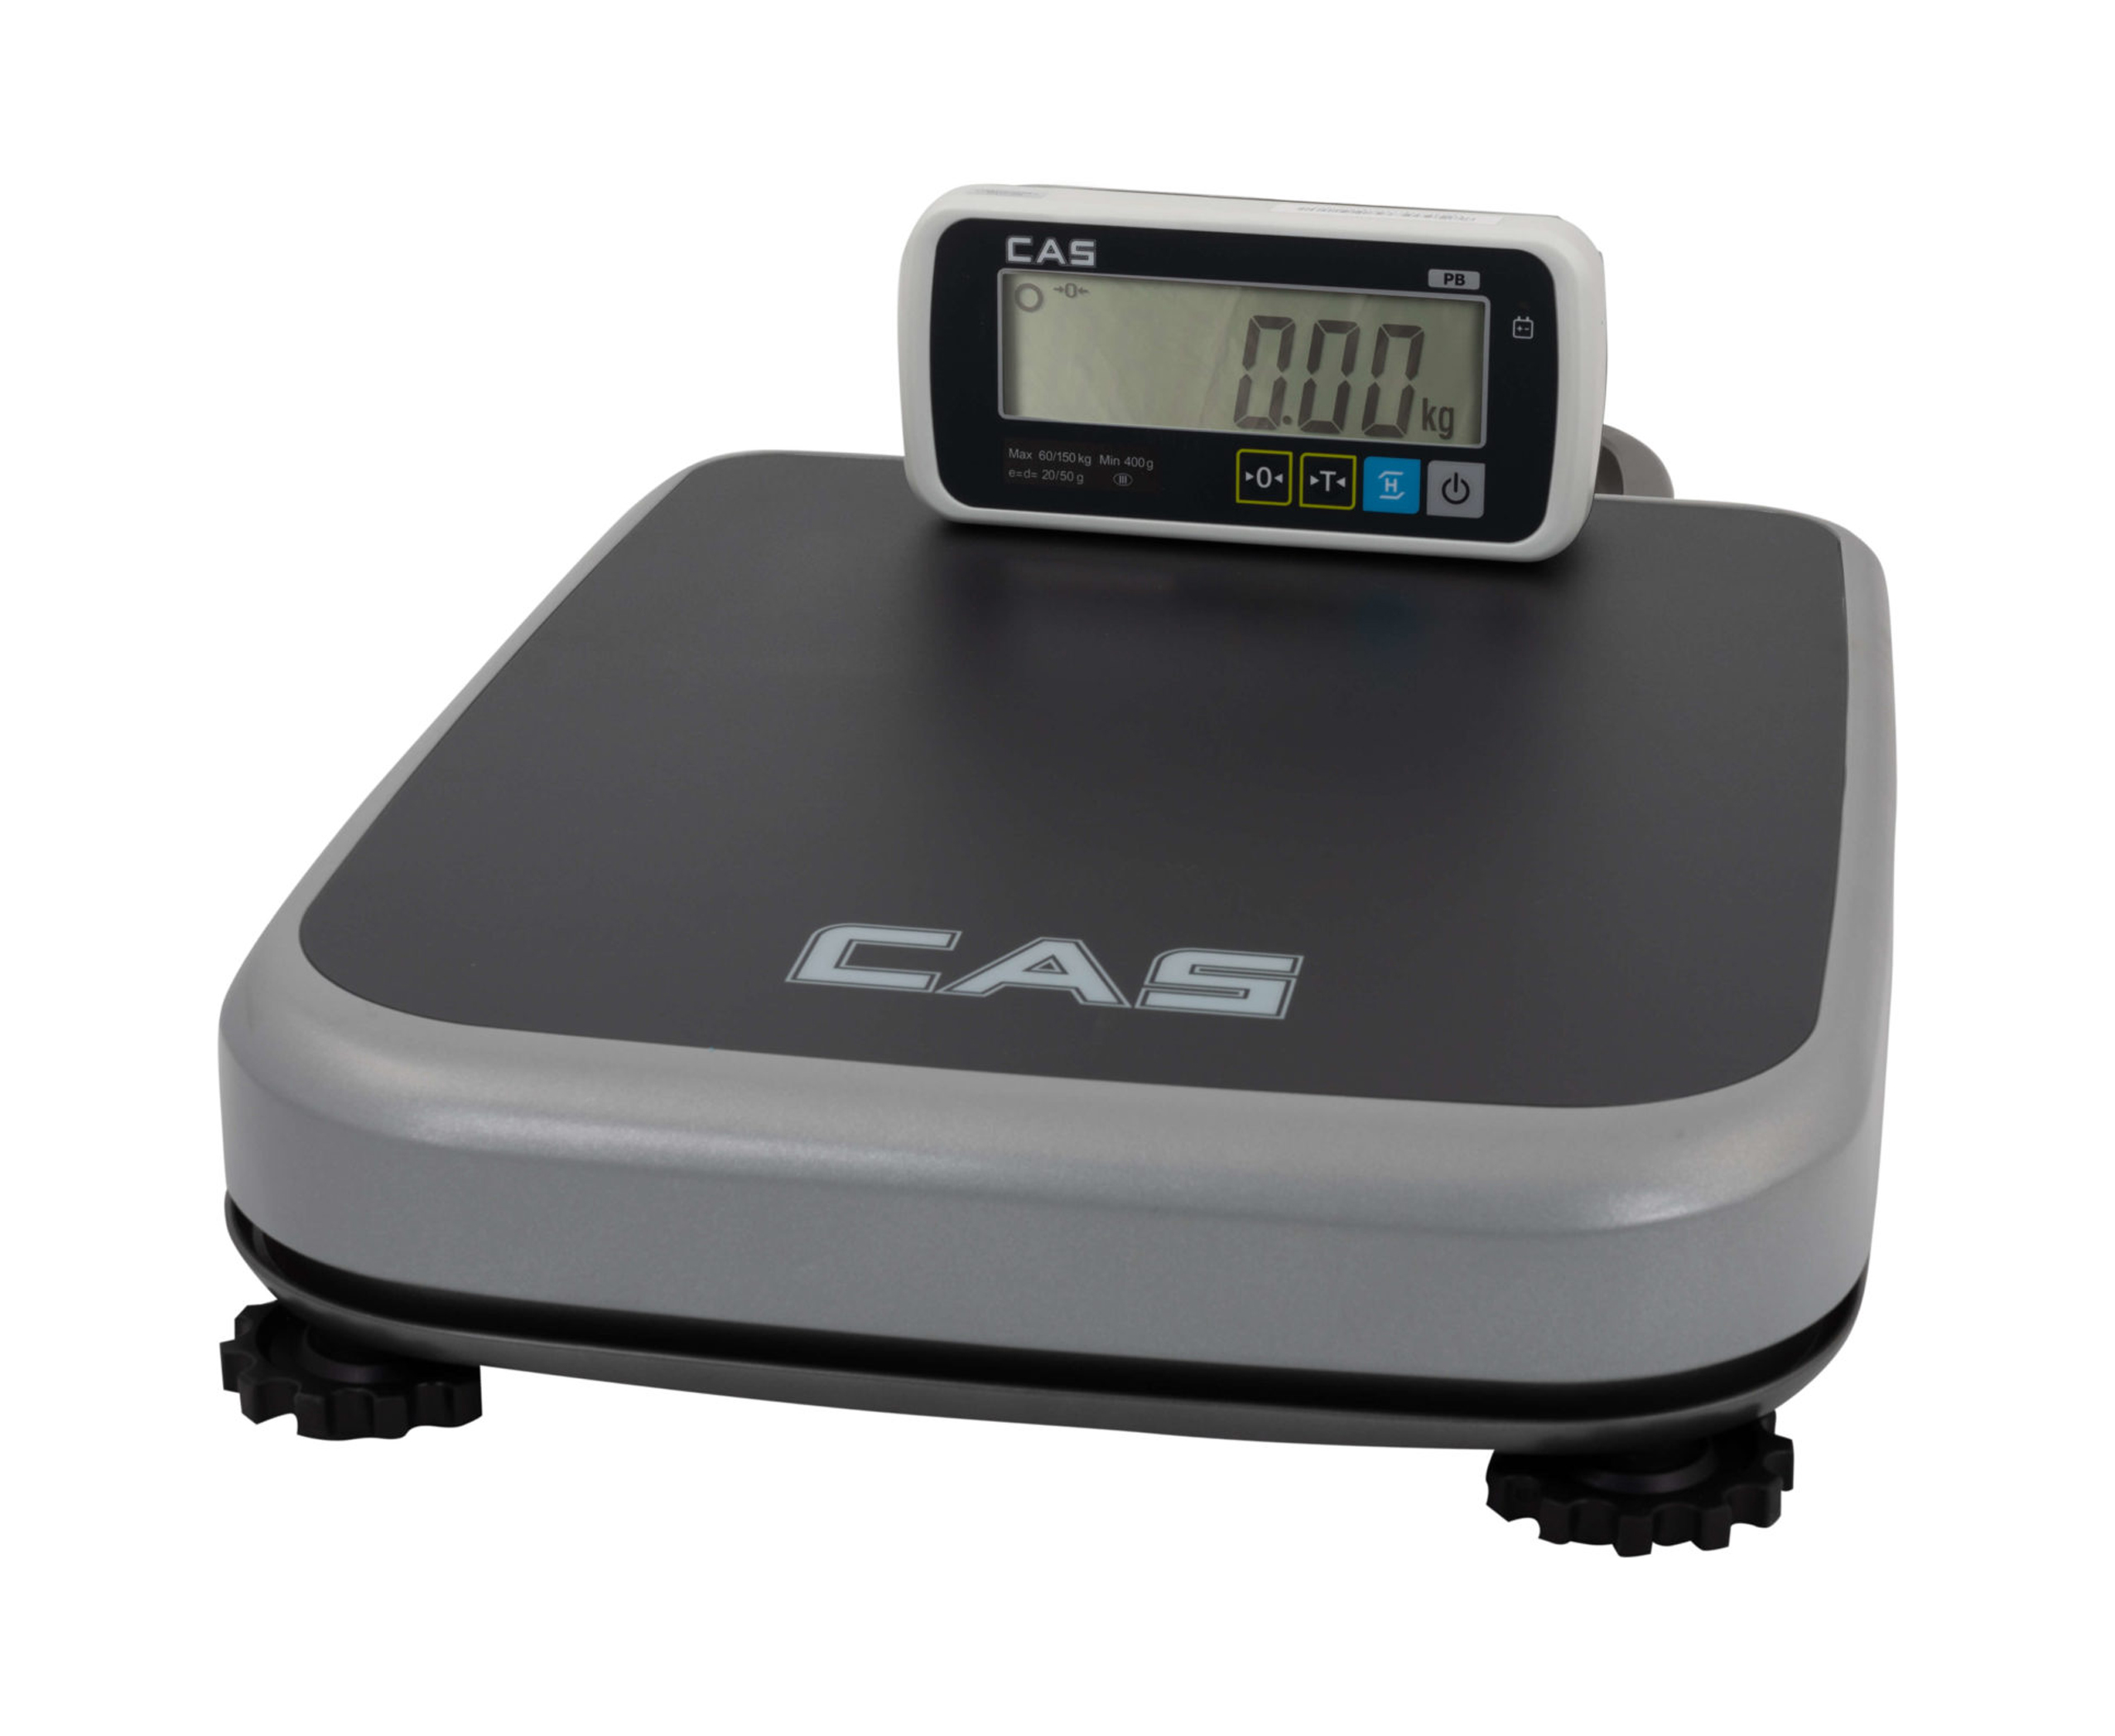 Весы товарные, переносные CAS PB-200 RS-232, наибольший предел взвешивания (НПВ) 200 кг., дискретность 50 г.